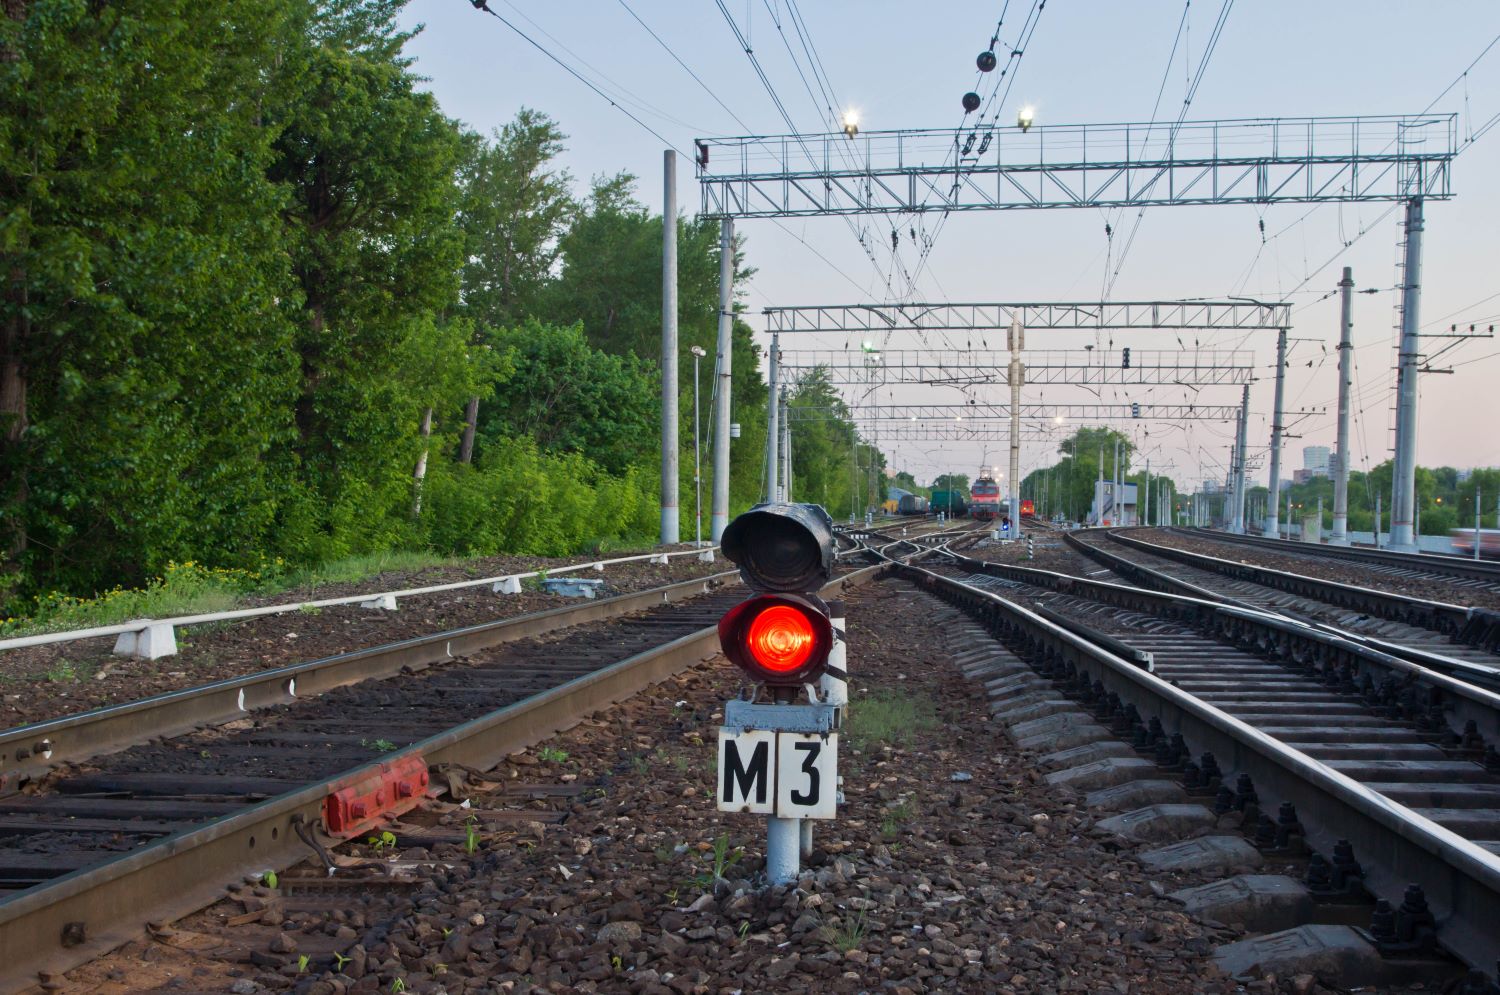 Sicurezza dei treni a rischio per le tempeste solari